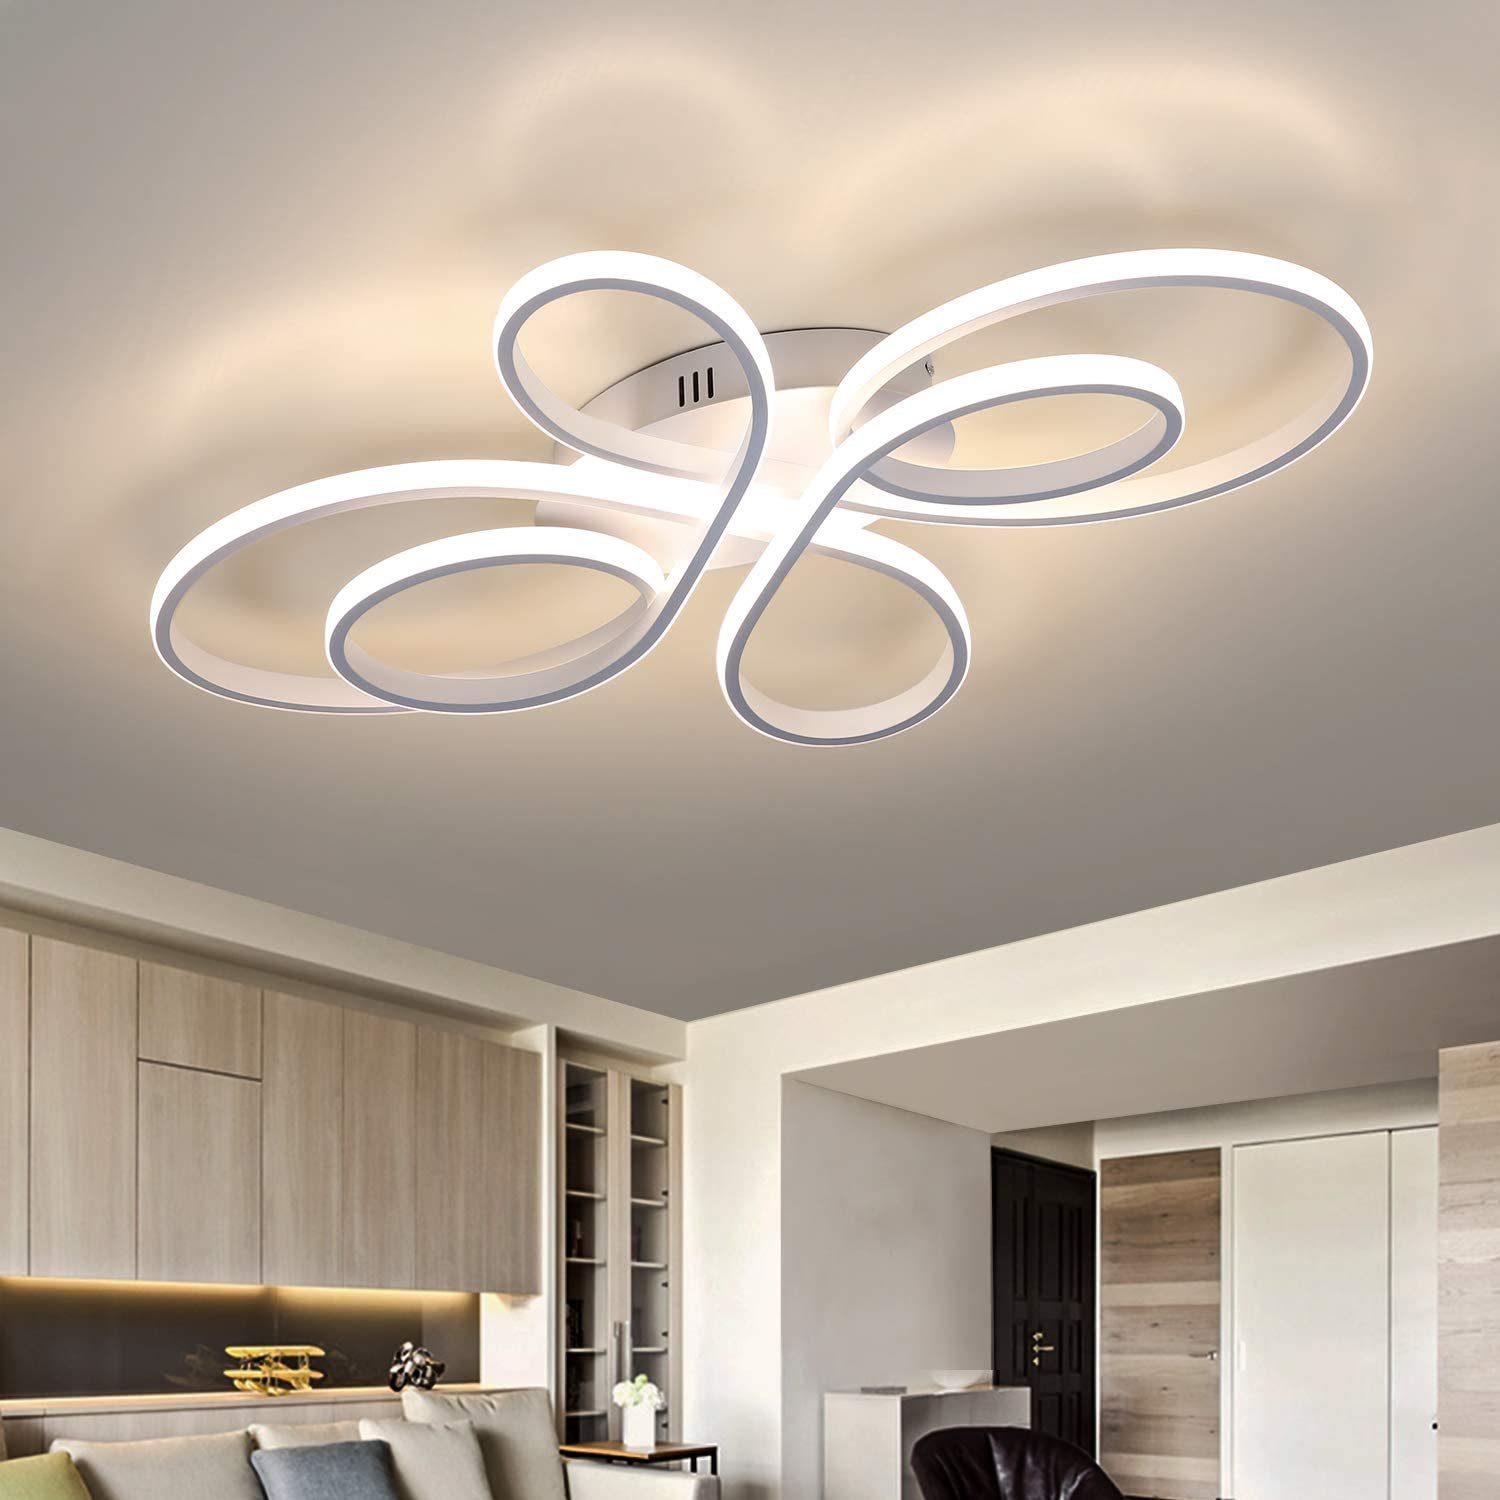 LED Decken Lampe Ess Zimmer Tageslicht Küchen Beleuchtung Energiespar Leuchte 